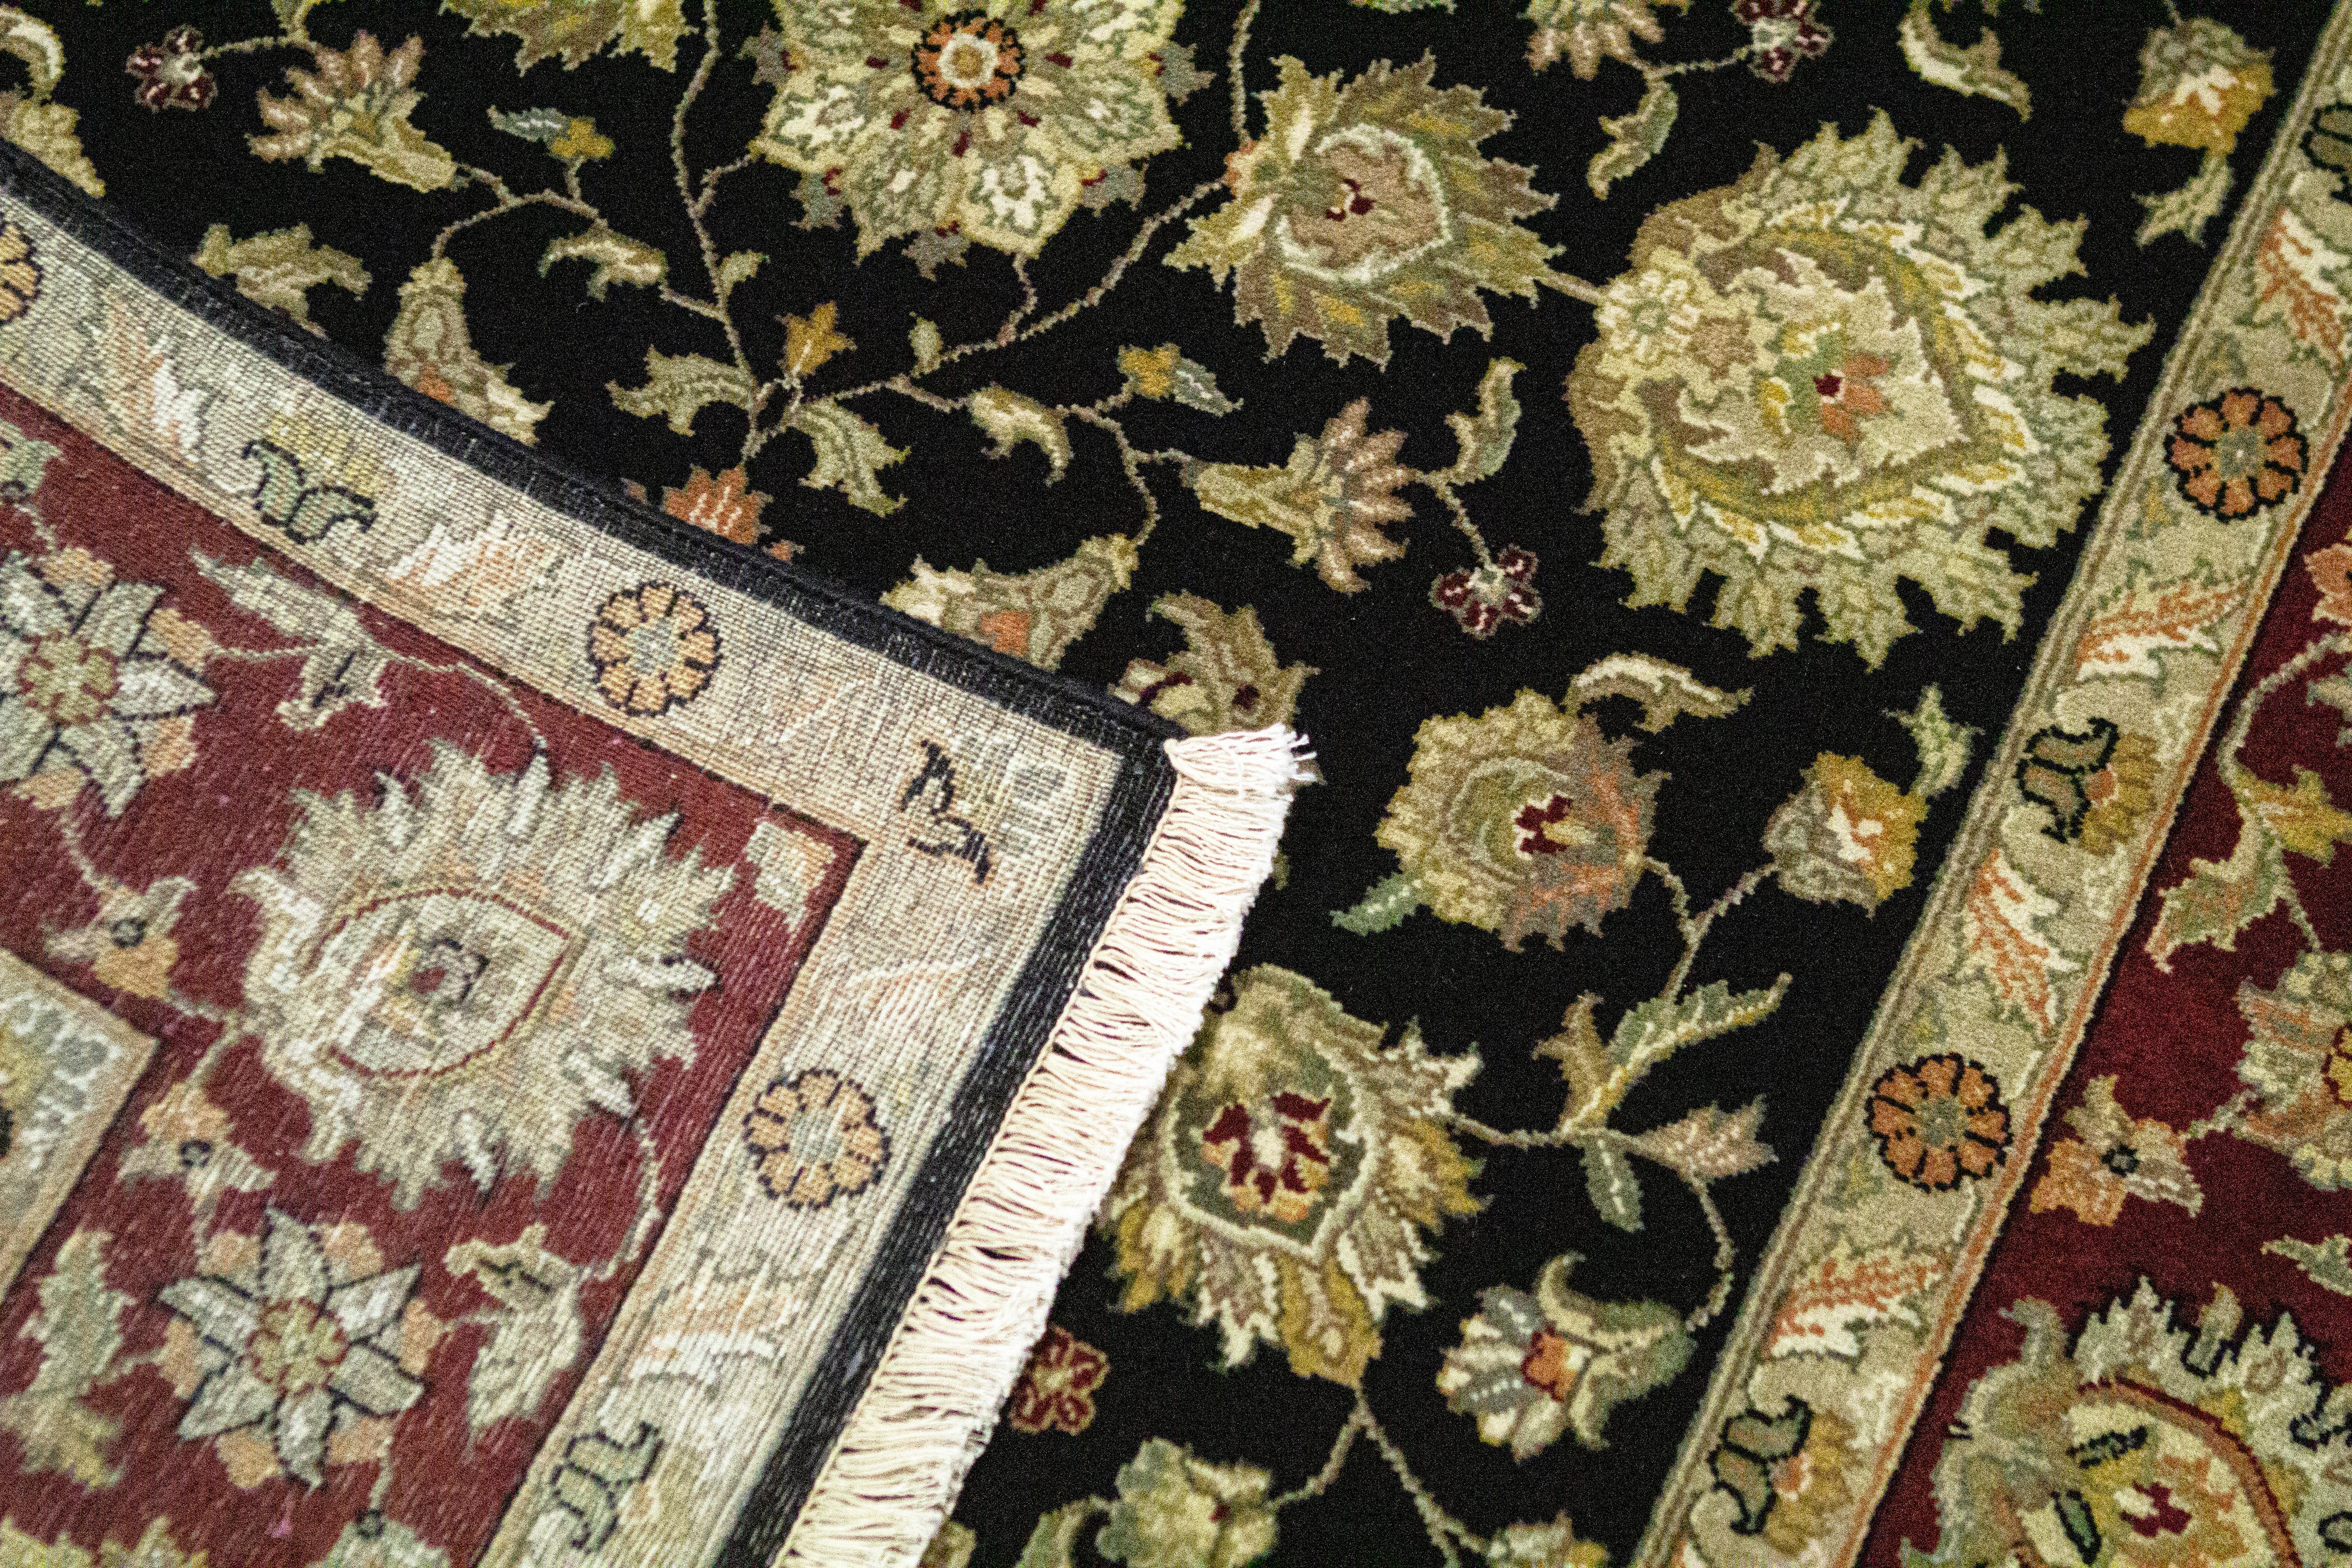 Antike Teppiche, die in Indien gewebt wurden, können auf eine lange Geschichte zurückblicken und gehören zu den faszinierendsten aller orientalischen Teppiche. Die Inspiration für diese Kollektion stammt von authentischen orientalischen Designs, die